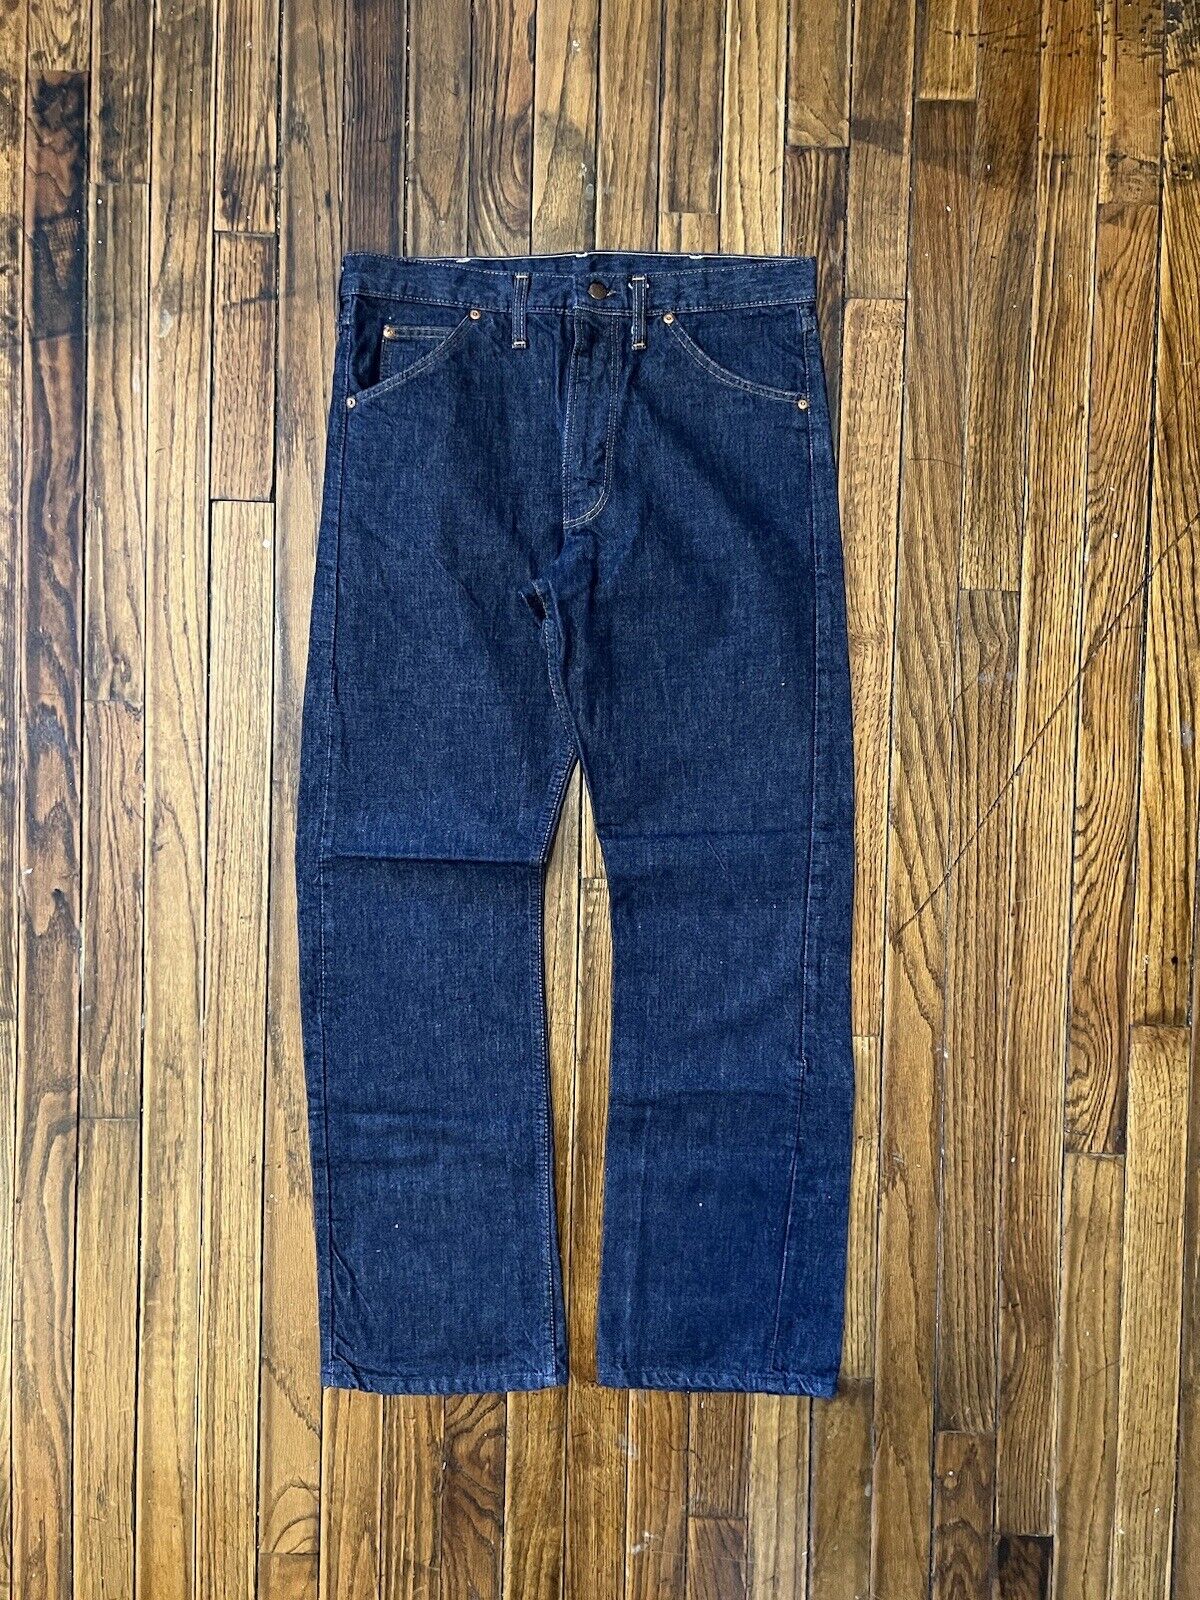 Vintage 70s Montgomery Ward Powr House Dark Wash Denim Jeans Straight Size34x31